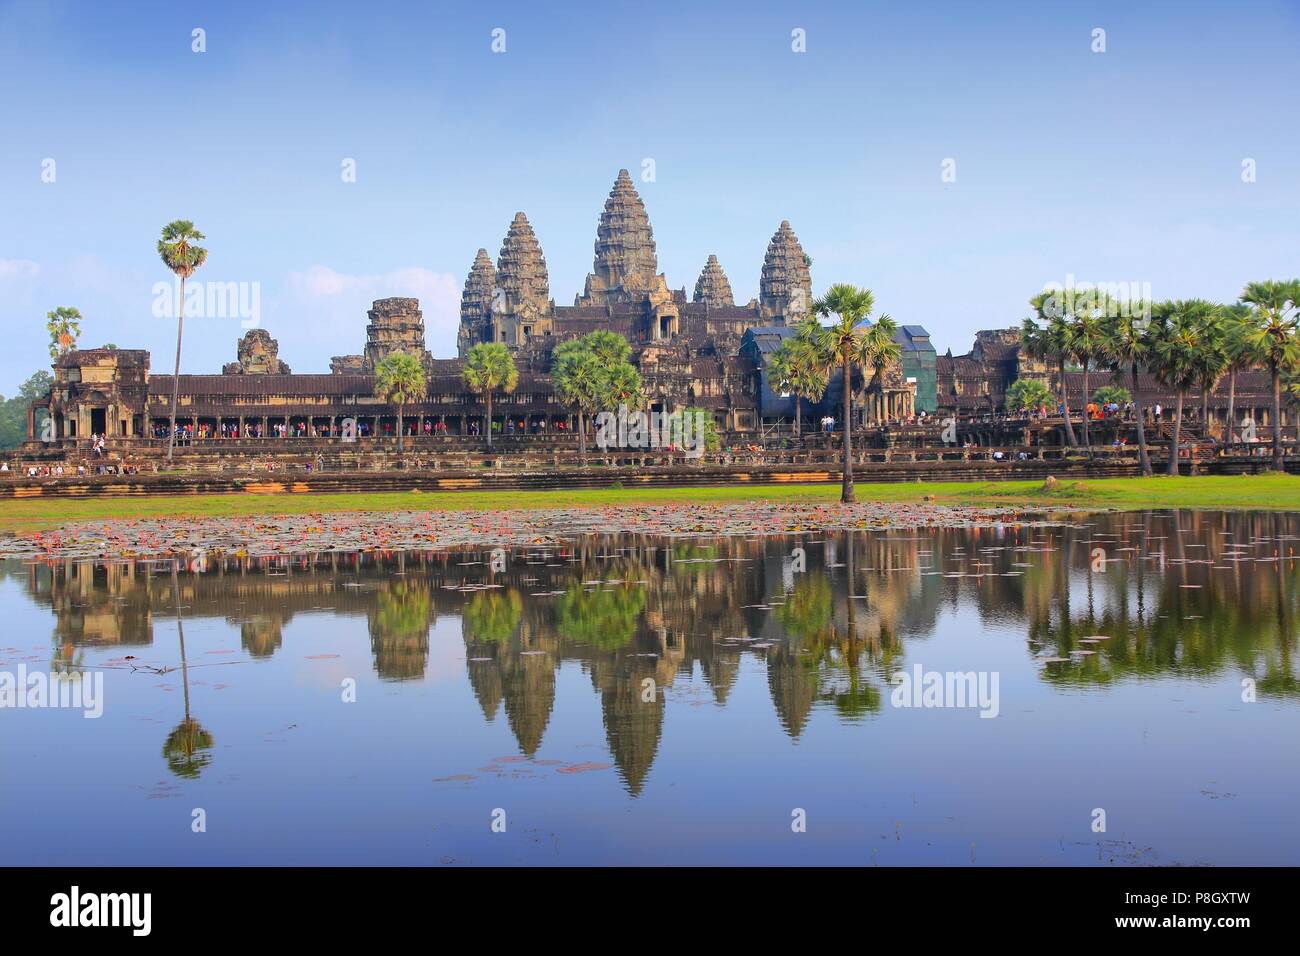 - Angkor Wat temple Khmer de la province de Siem Reap, Cambodge, Asie du sud-est. UNESCO World Heritage Site. Banque D'Images